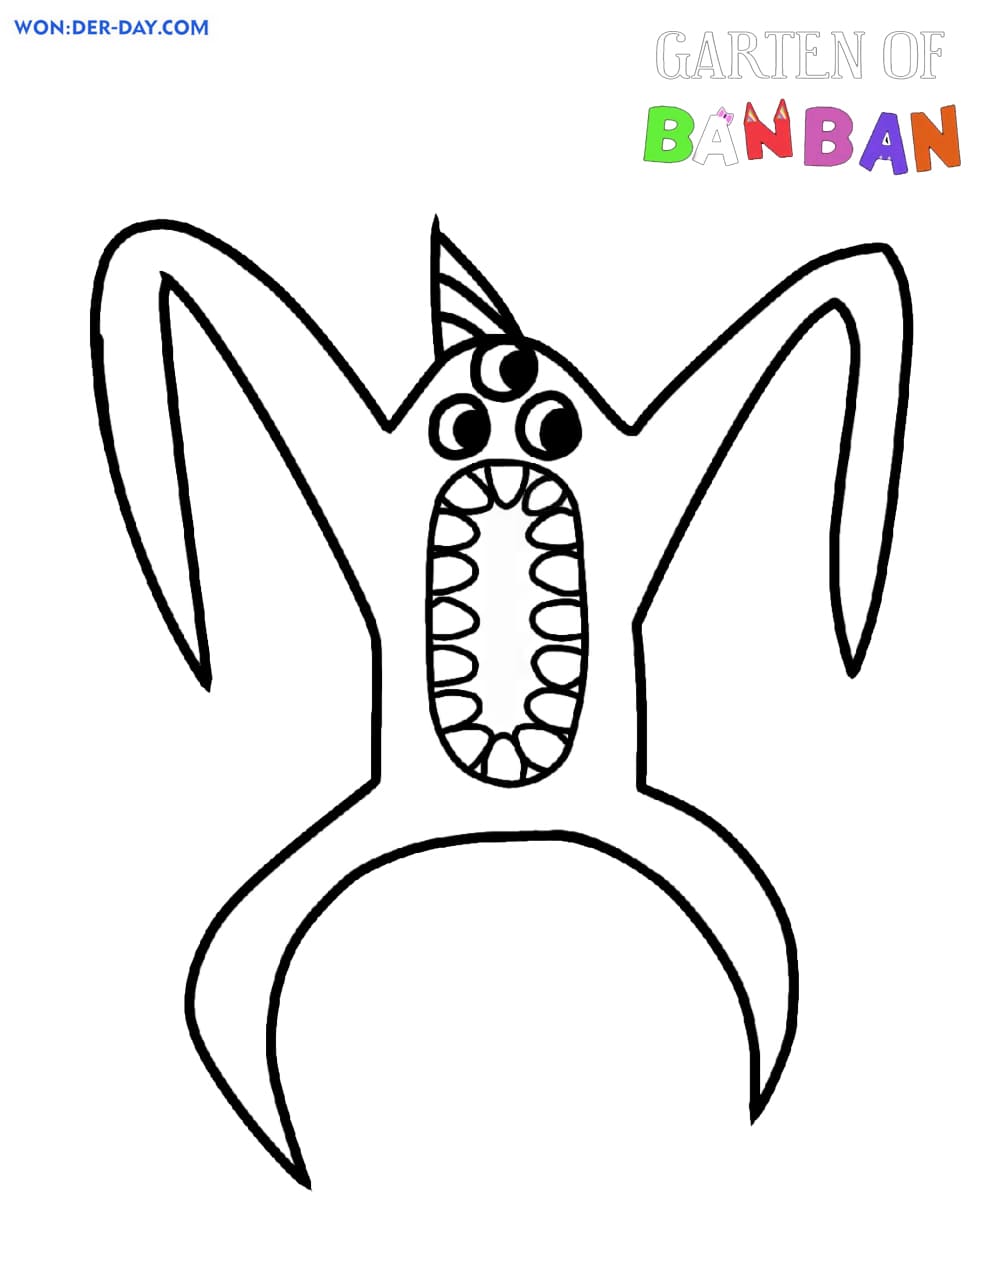 Desenhos de Garten de Banban para colorir  WONDER DAY — Desenhos para  colorir para crianças e adultos